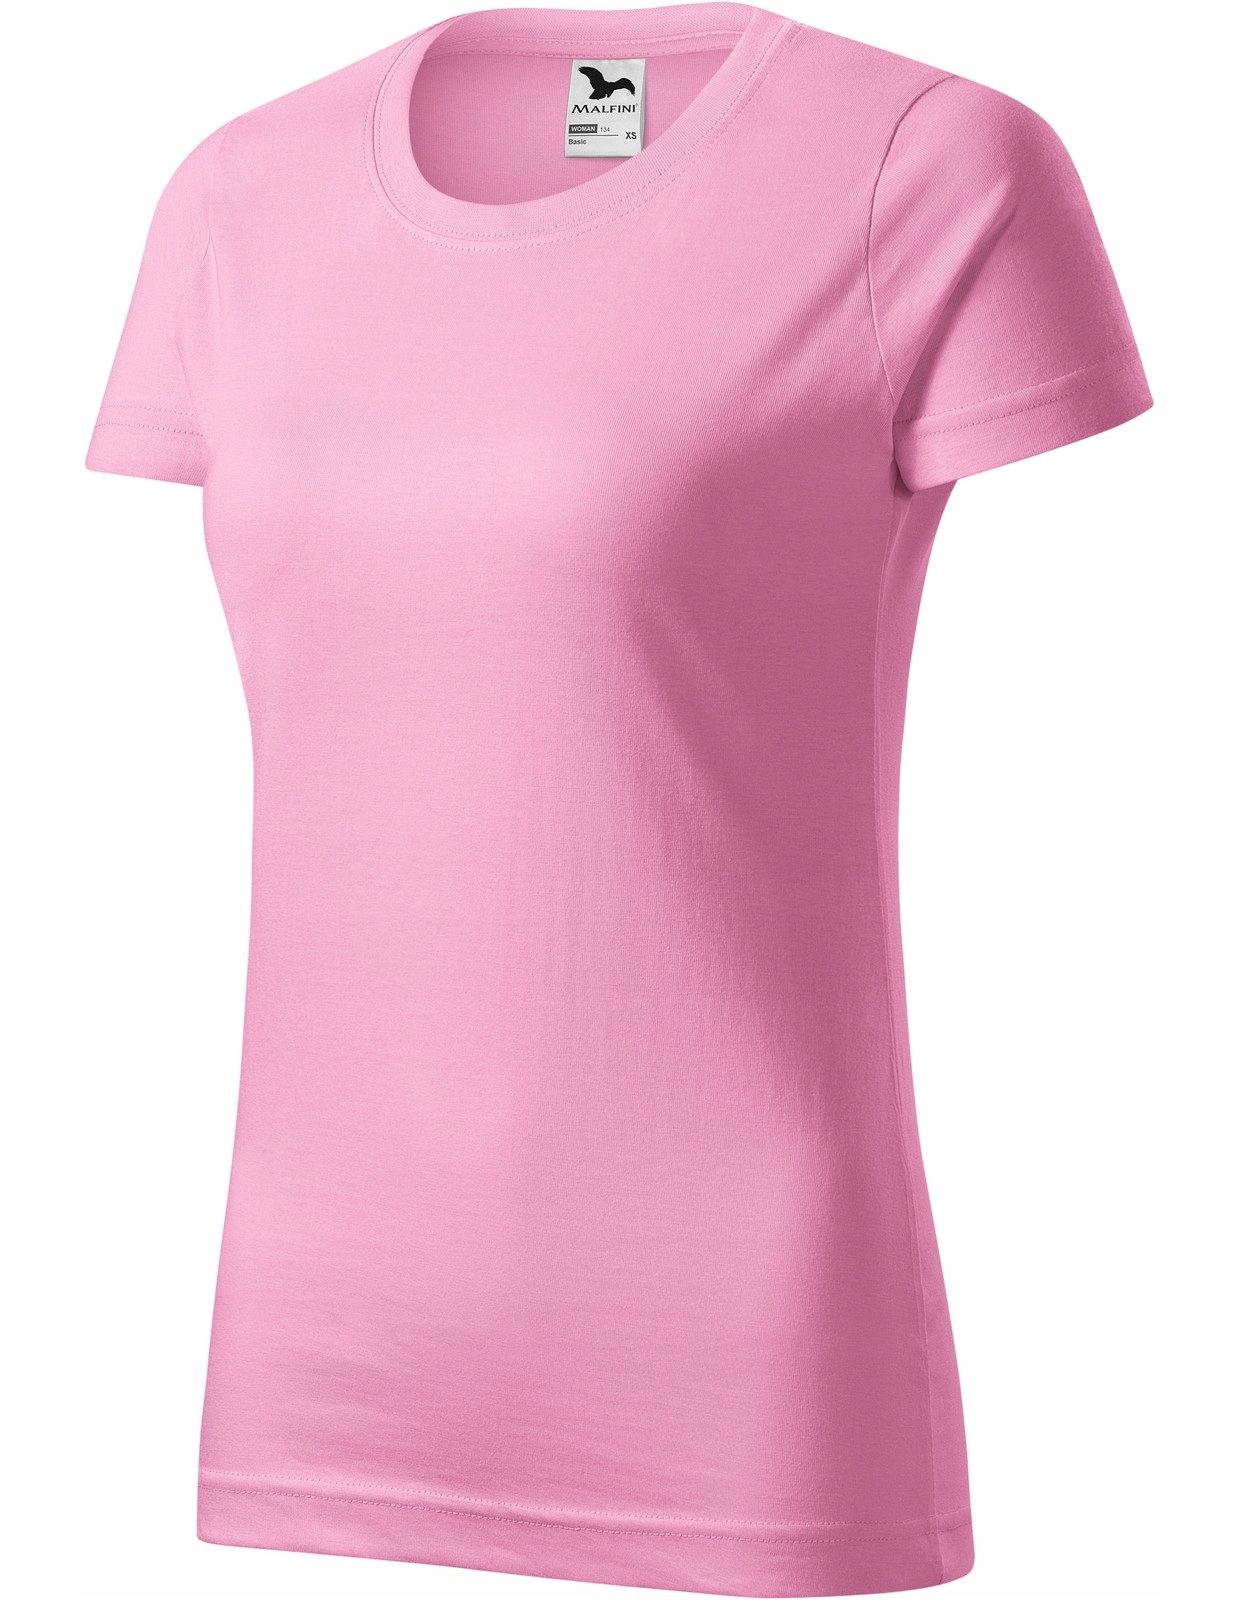 134 160. Футболка с розовой пантерой. Funday розовое платье. Футболка Pink. Butterfly Antei футболка розовая.